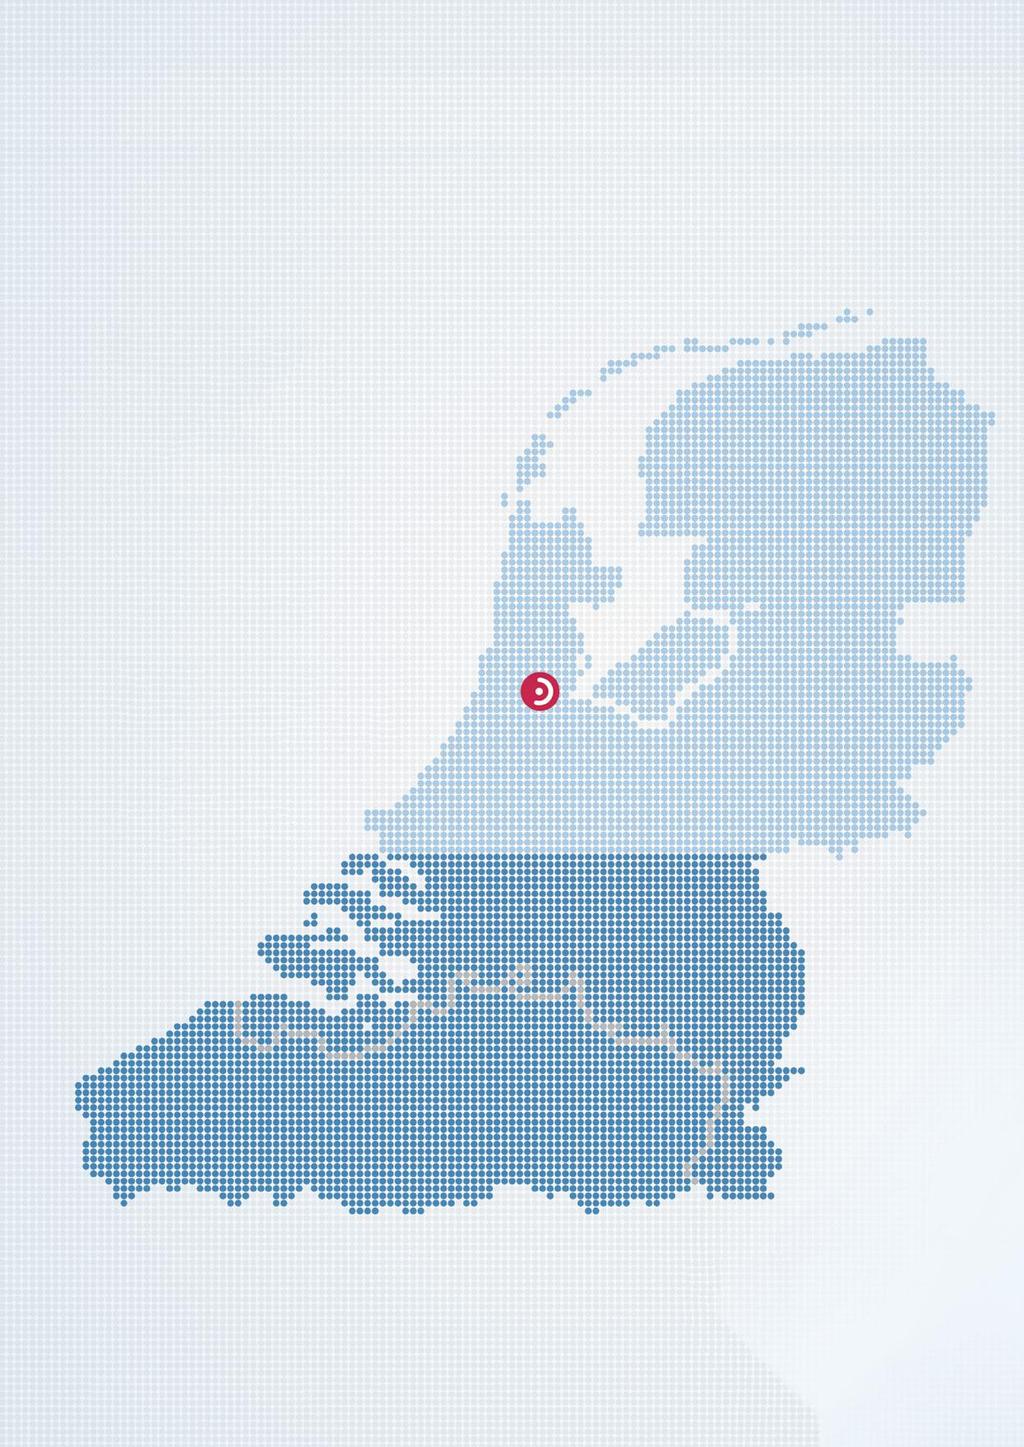 Bernafon op de kaart Zuid Nederland & Vlaanderen Bjorn Wielakker Brand Manager Mobiel: +31 6